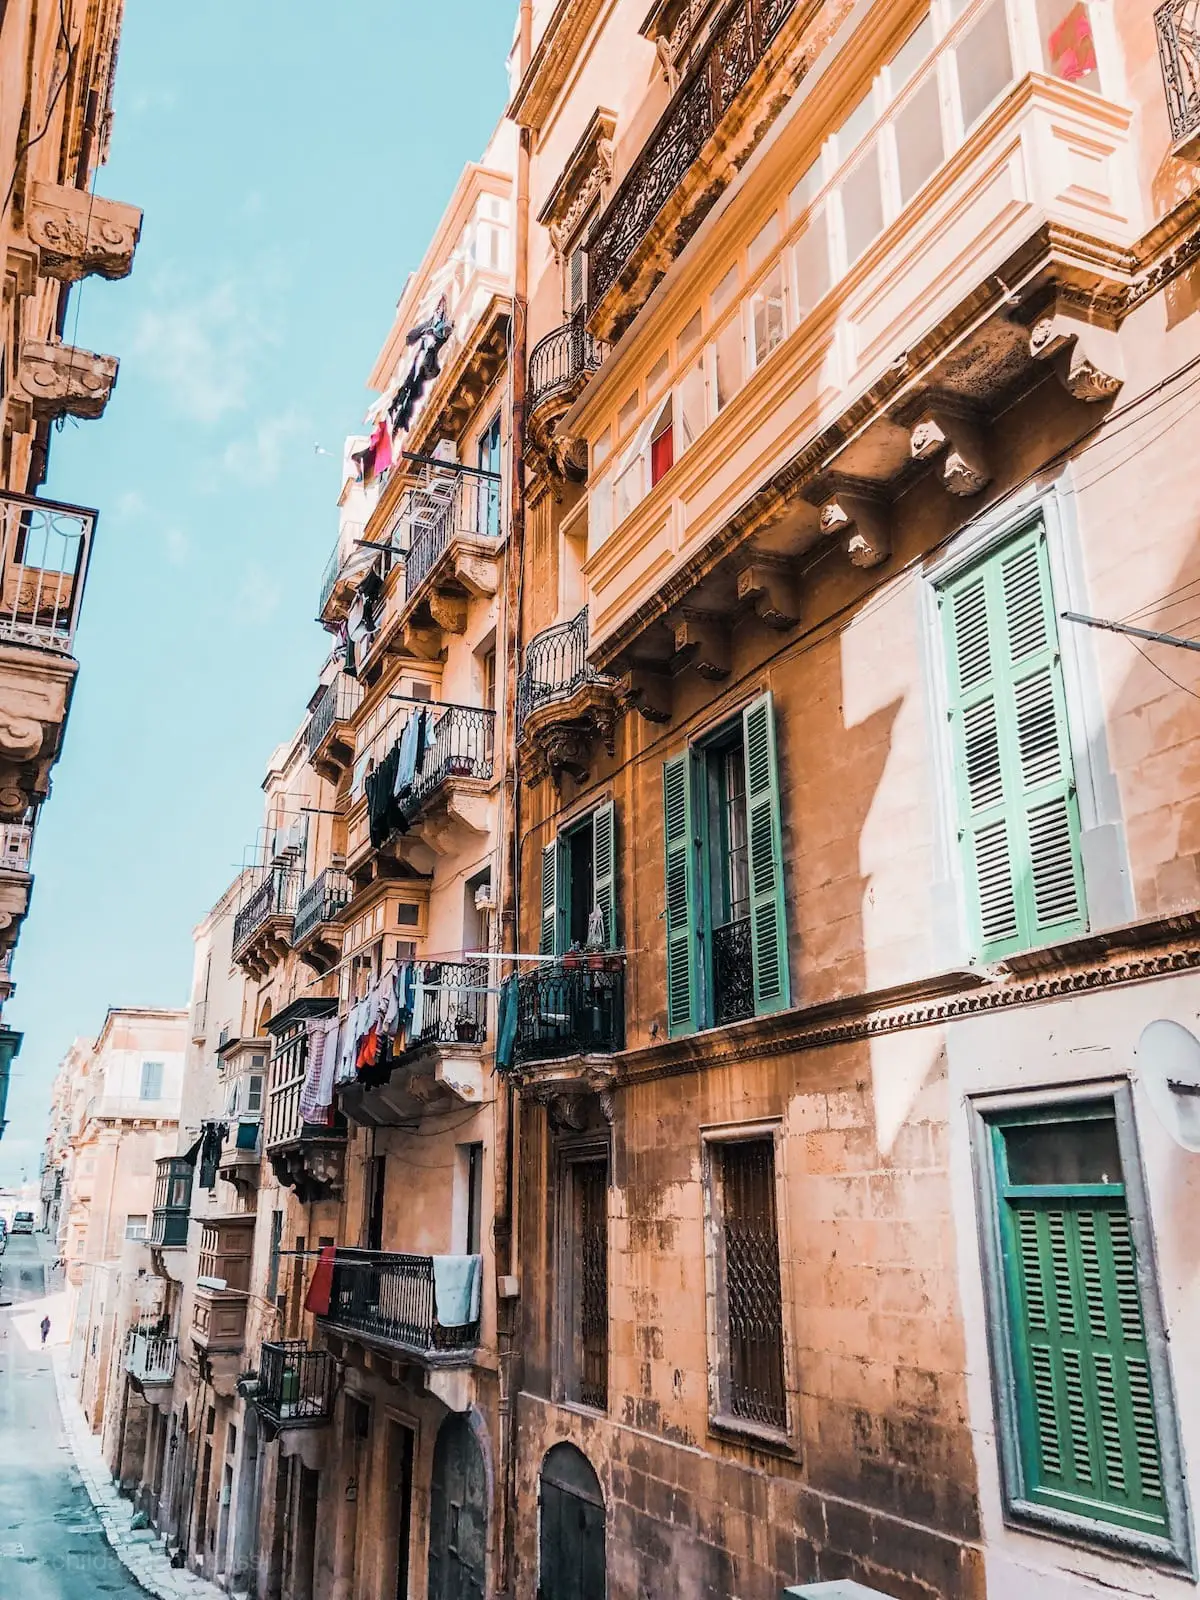 Städtereise Valletta, ein Tag in Valletta Sehenswürdigkeiten, Malta Urlaub ohne Mietwagen, Malta Rundreise, Malta Sehenswürdigkeiten